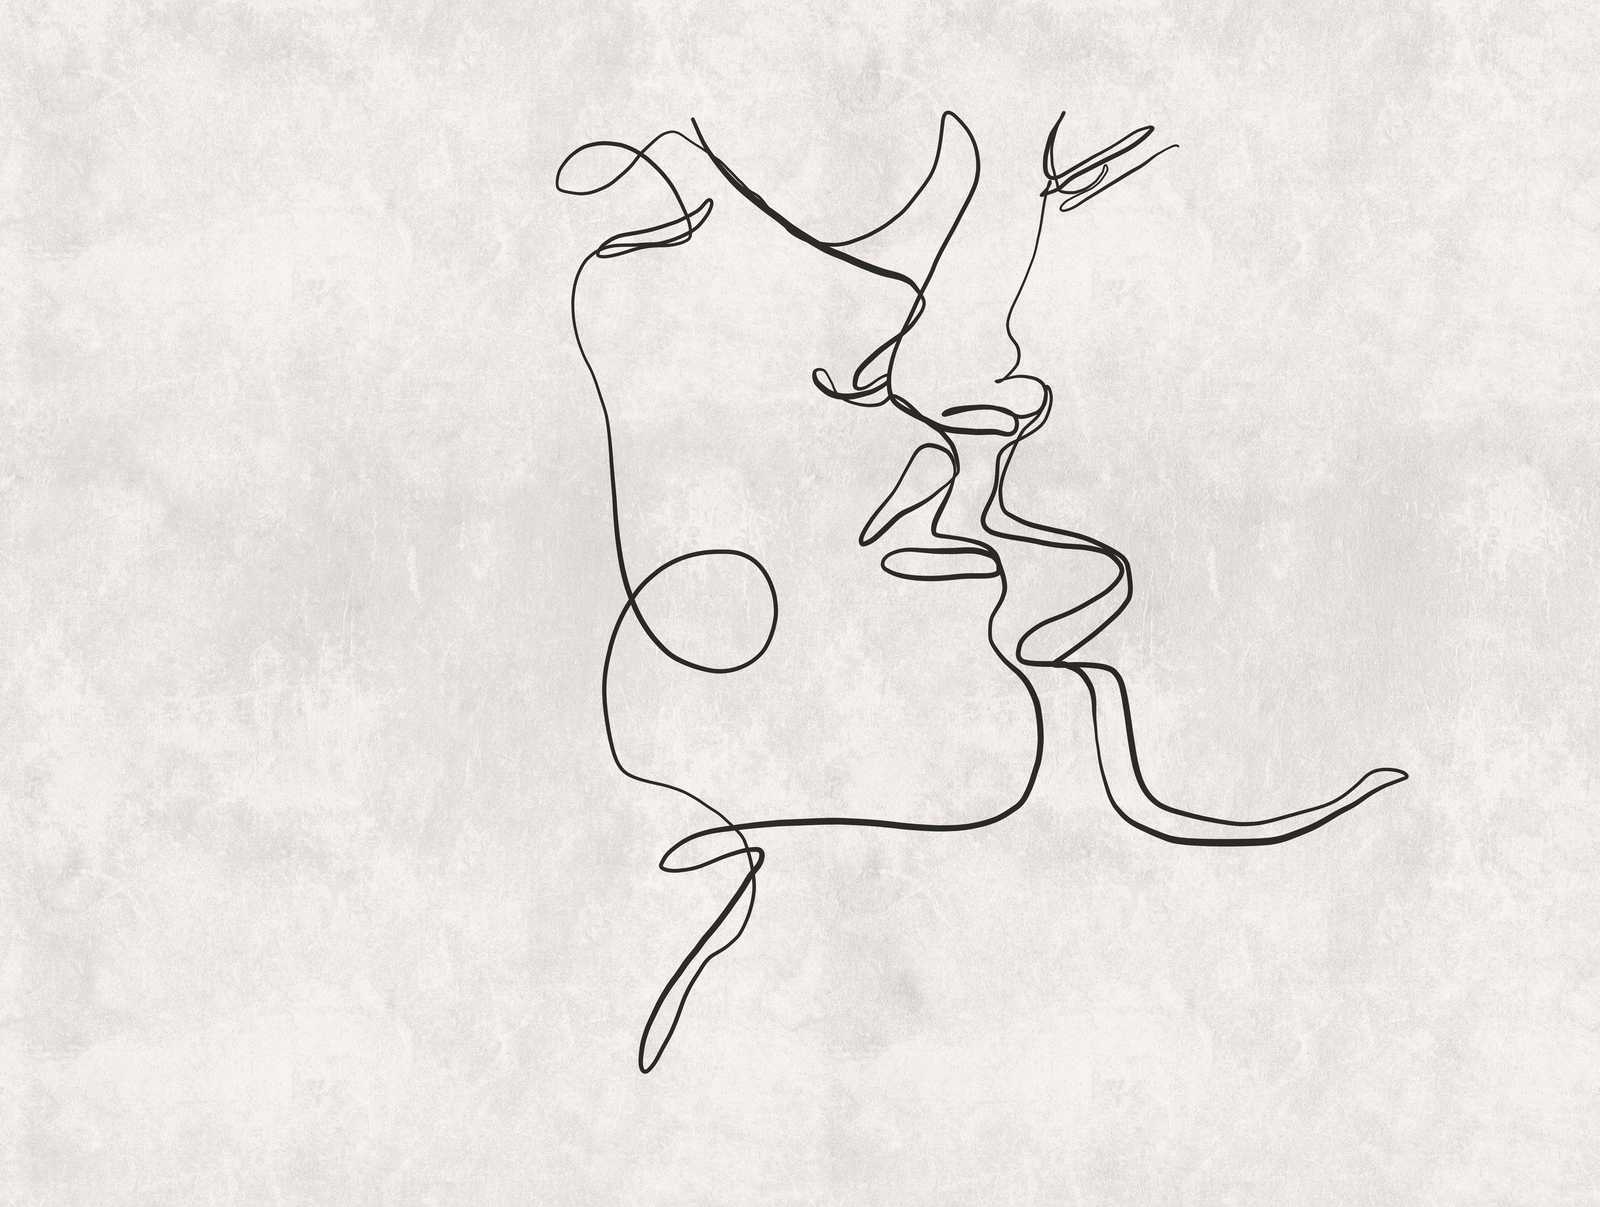             Tapeten-Neuheit – Line Art Motivtapete Kuss mit Putzoptik
        